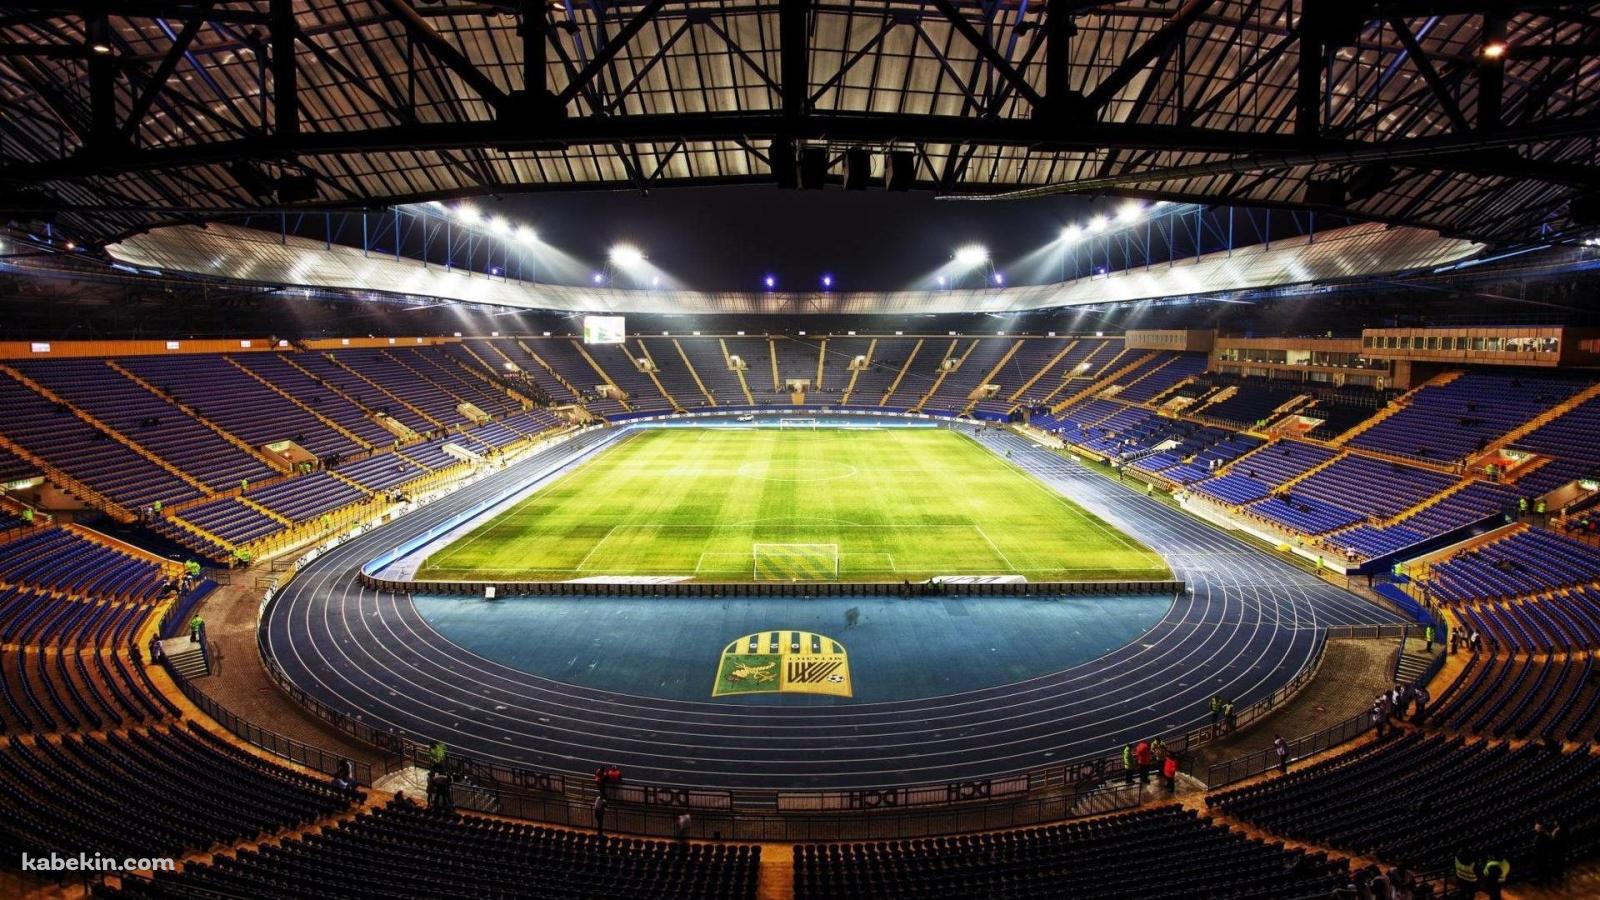 欧州サッカーのスタジアムの壁紙(1600px x 900px) 高画質 PC・デスクトップ用